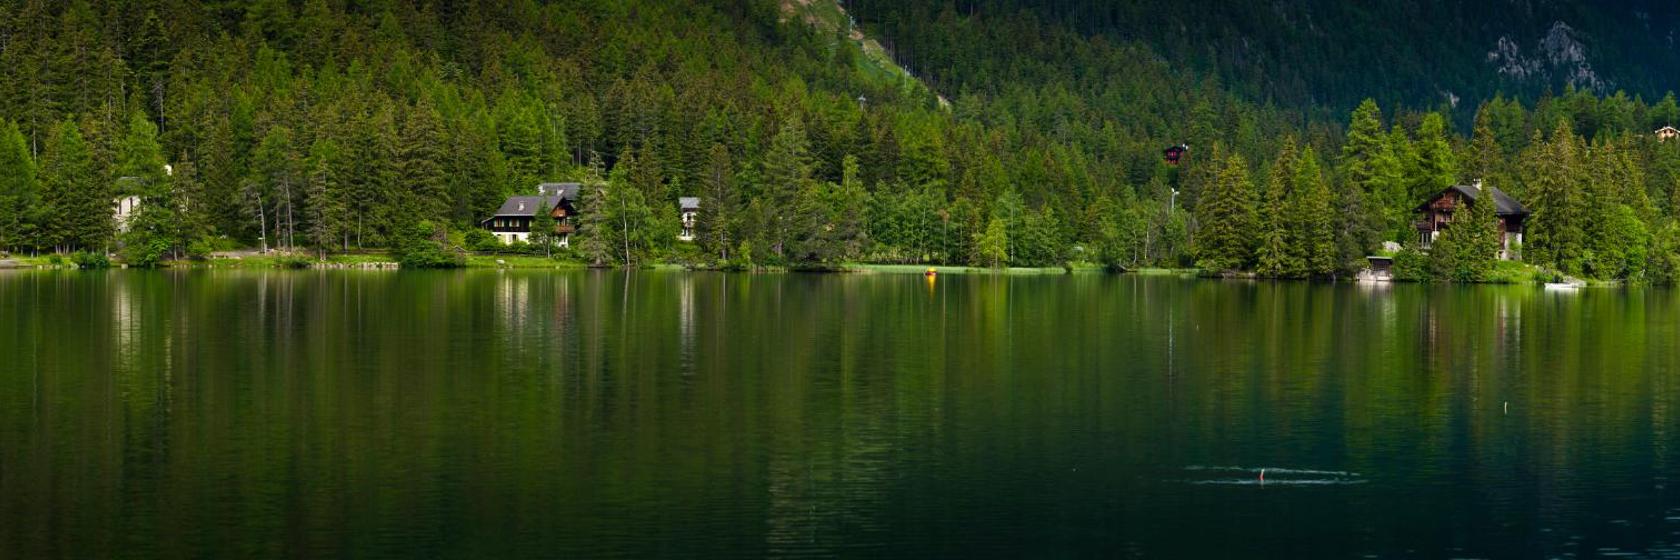 10 Best Champex Hotels, Switzerland (From $134)